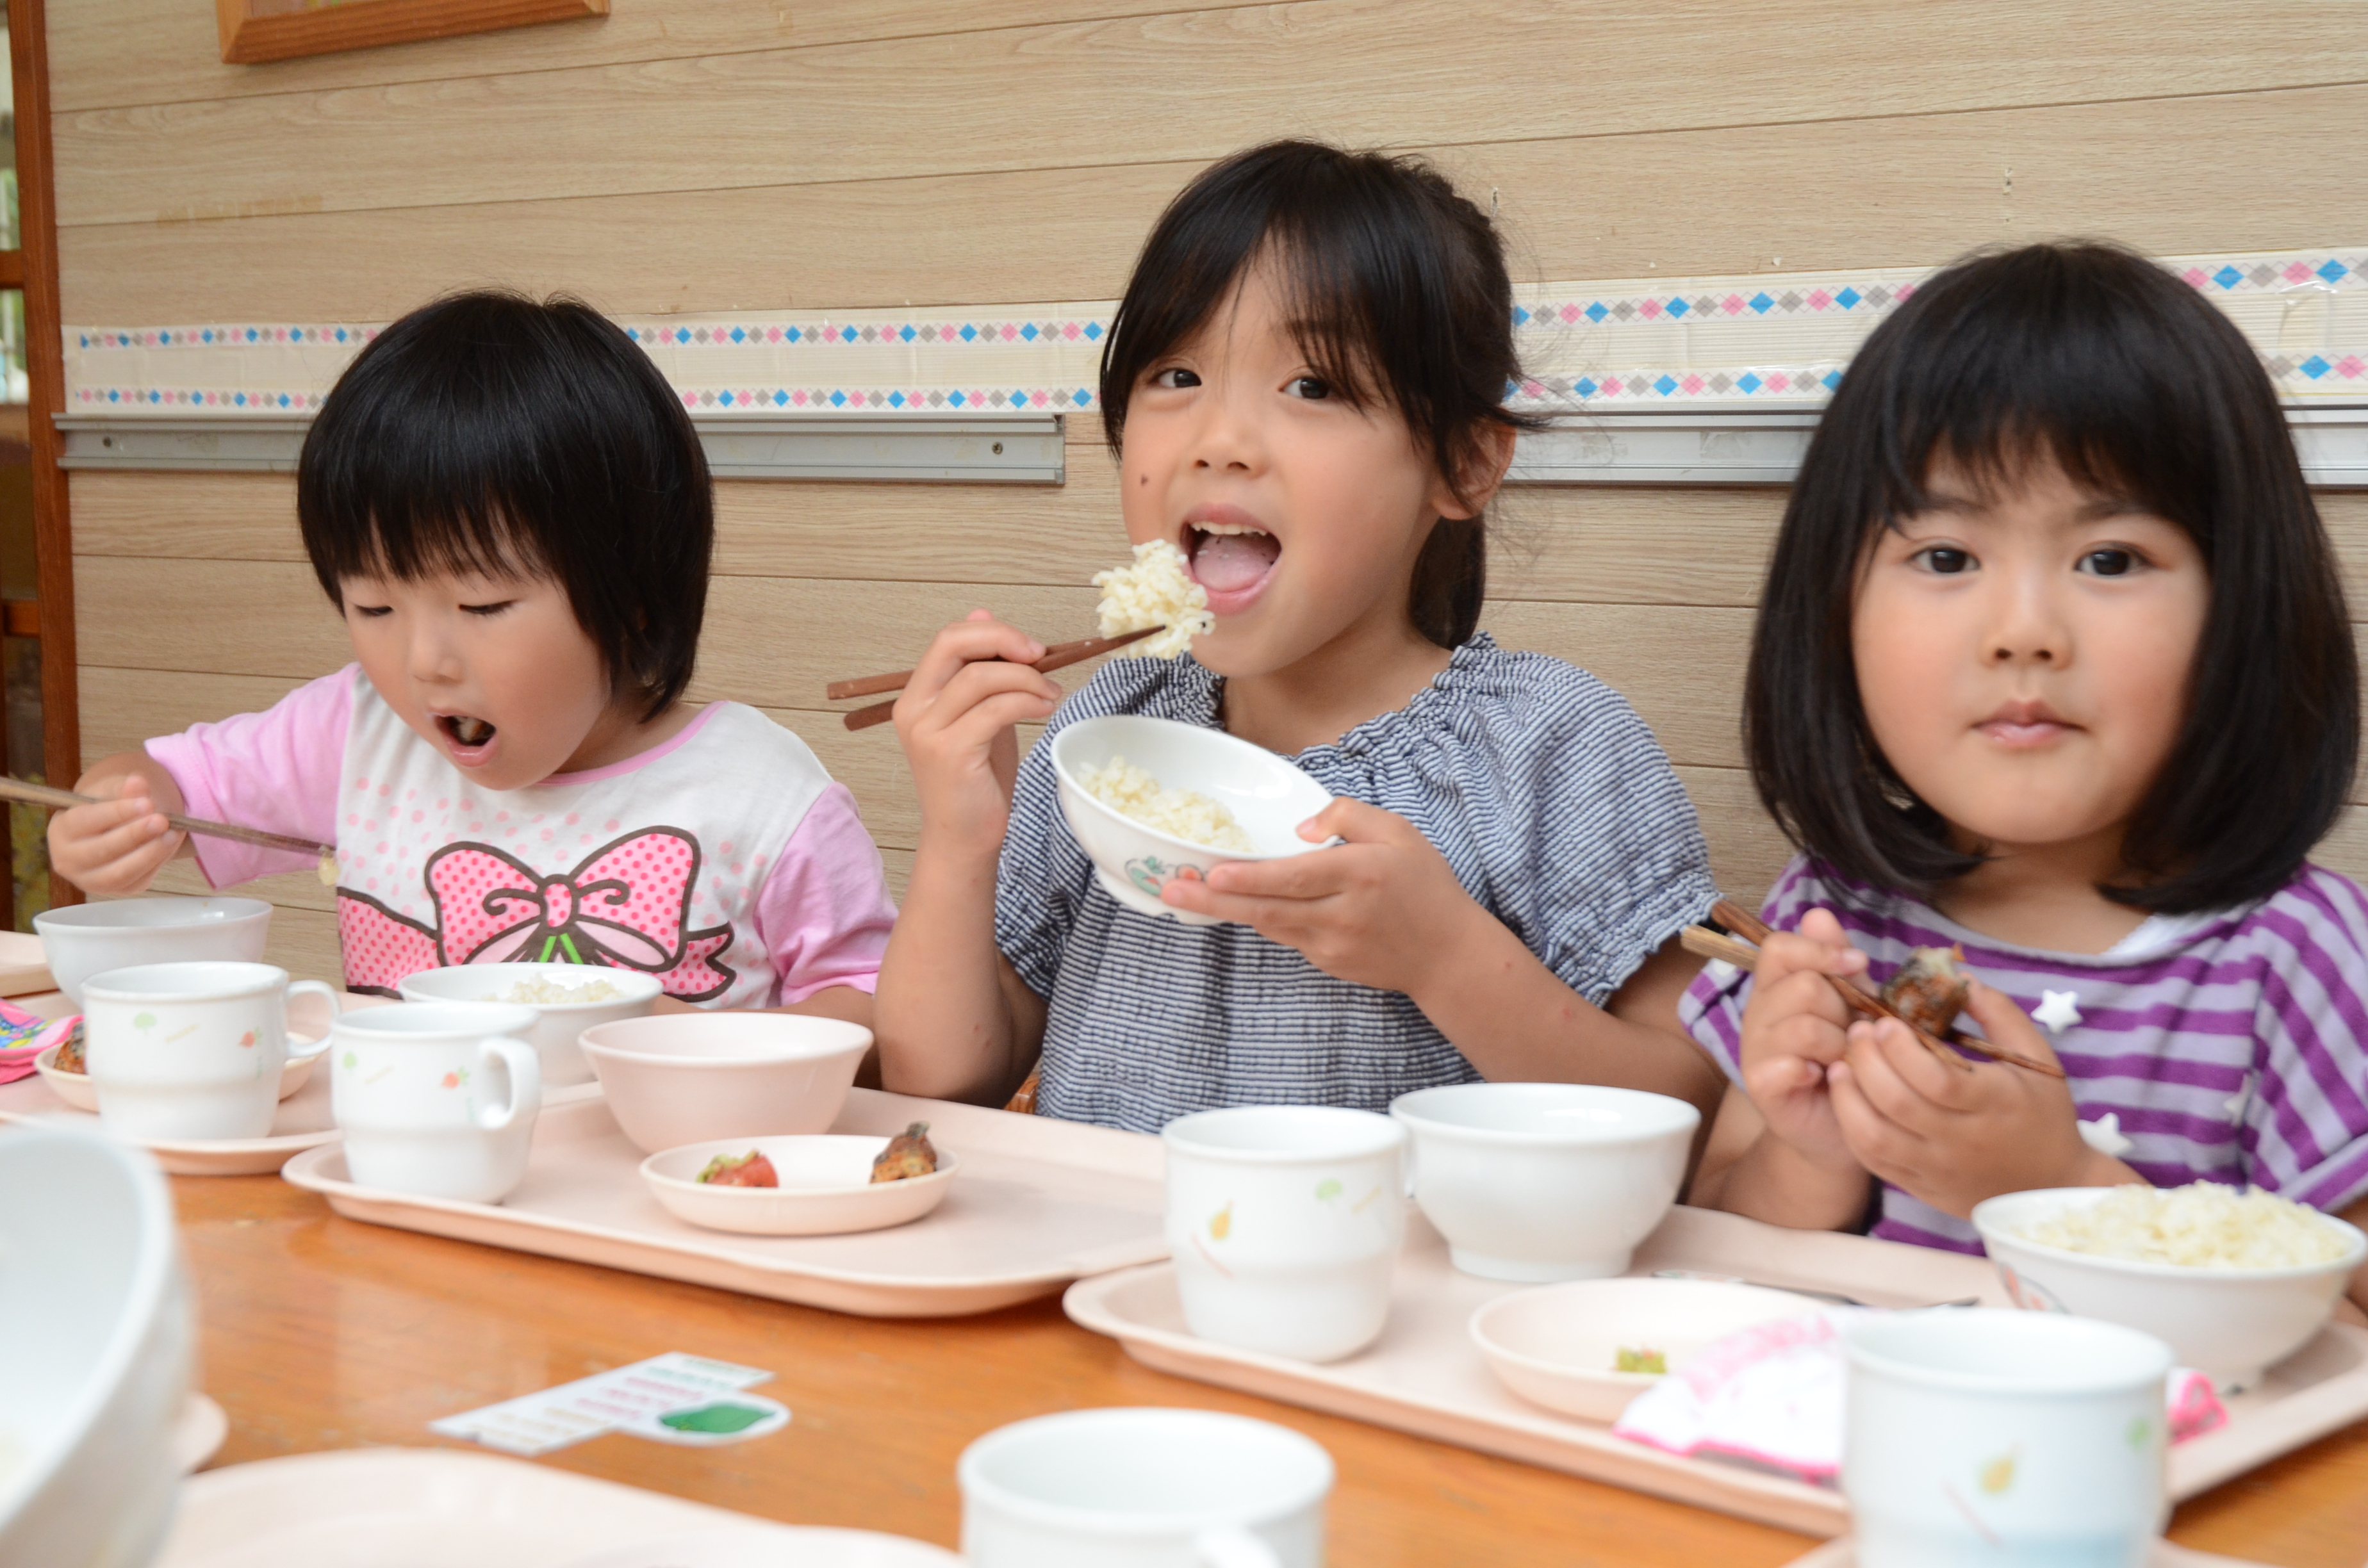 チャレンジナンバー2のメイン画像、市内で収穫された野菜で作った給食をおいしそうに食べる吉田保育所の園児たち